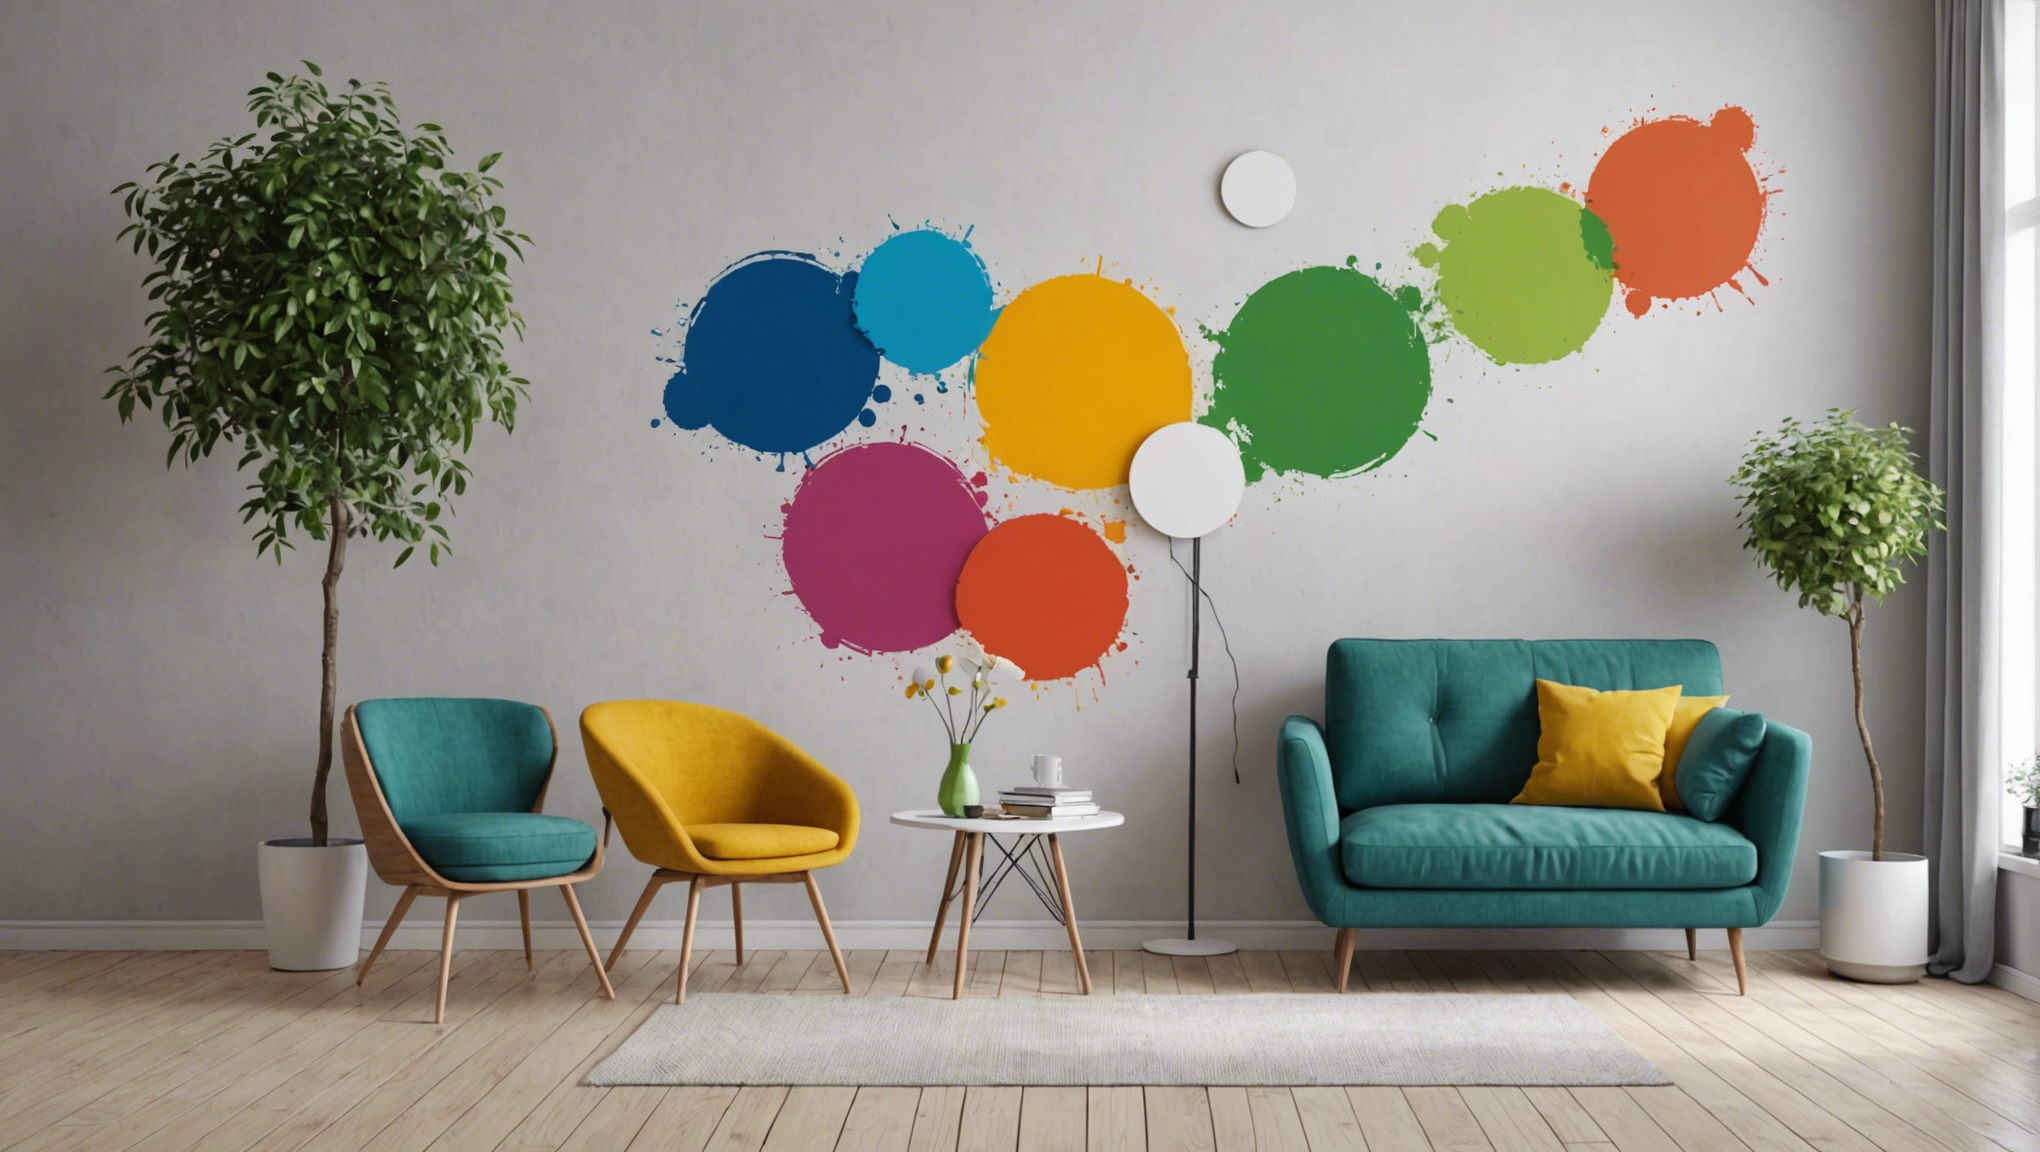 découvrez les avantages de la peinture et du papier peint pour relooker vos murs et choisissez la solution qui correspond le mieux à votre style et à vos besoins.